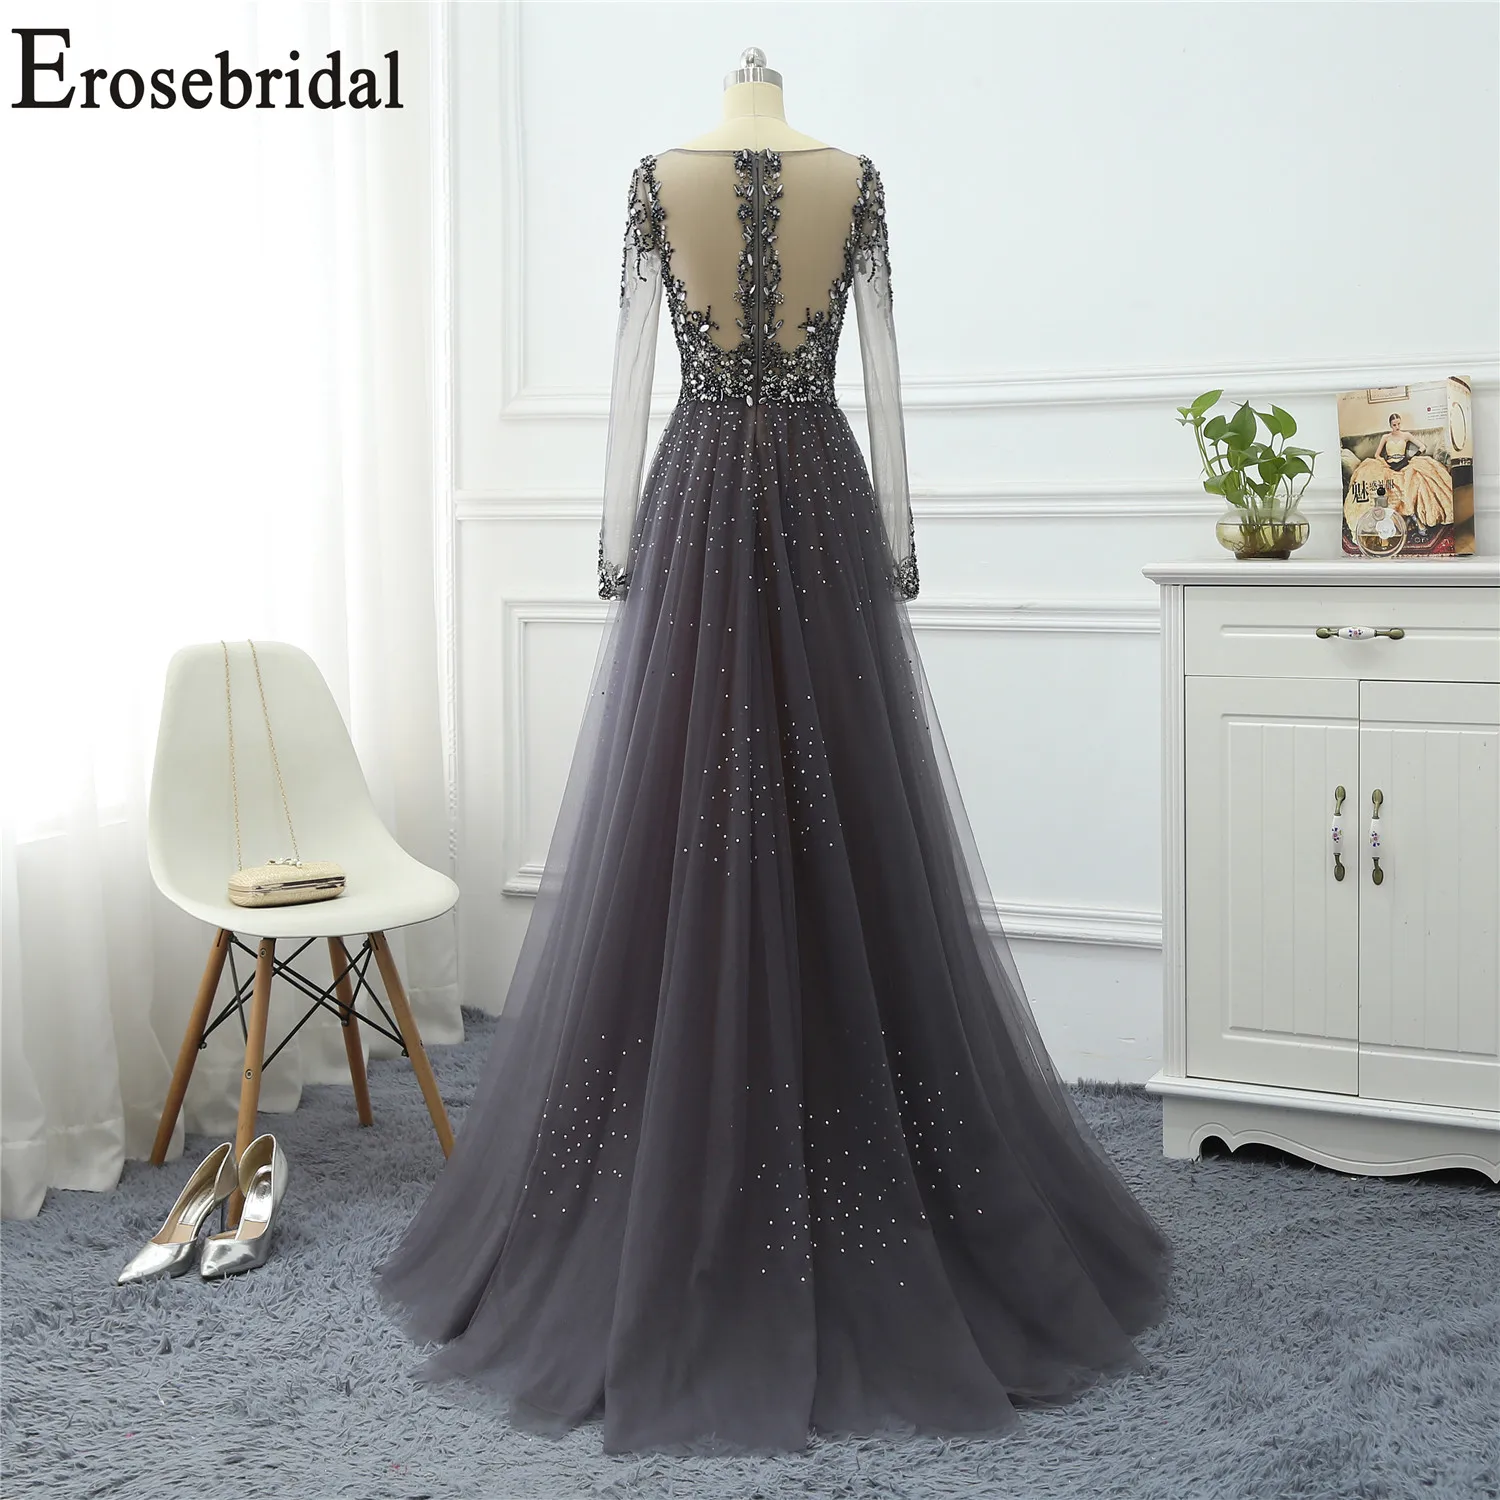 Erosebridal платья с длинным рукавом для особых случаев для женщин вечернее платье Длинные официальные платья вечерние платья тюль ткань с бисером